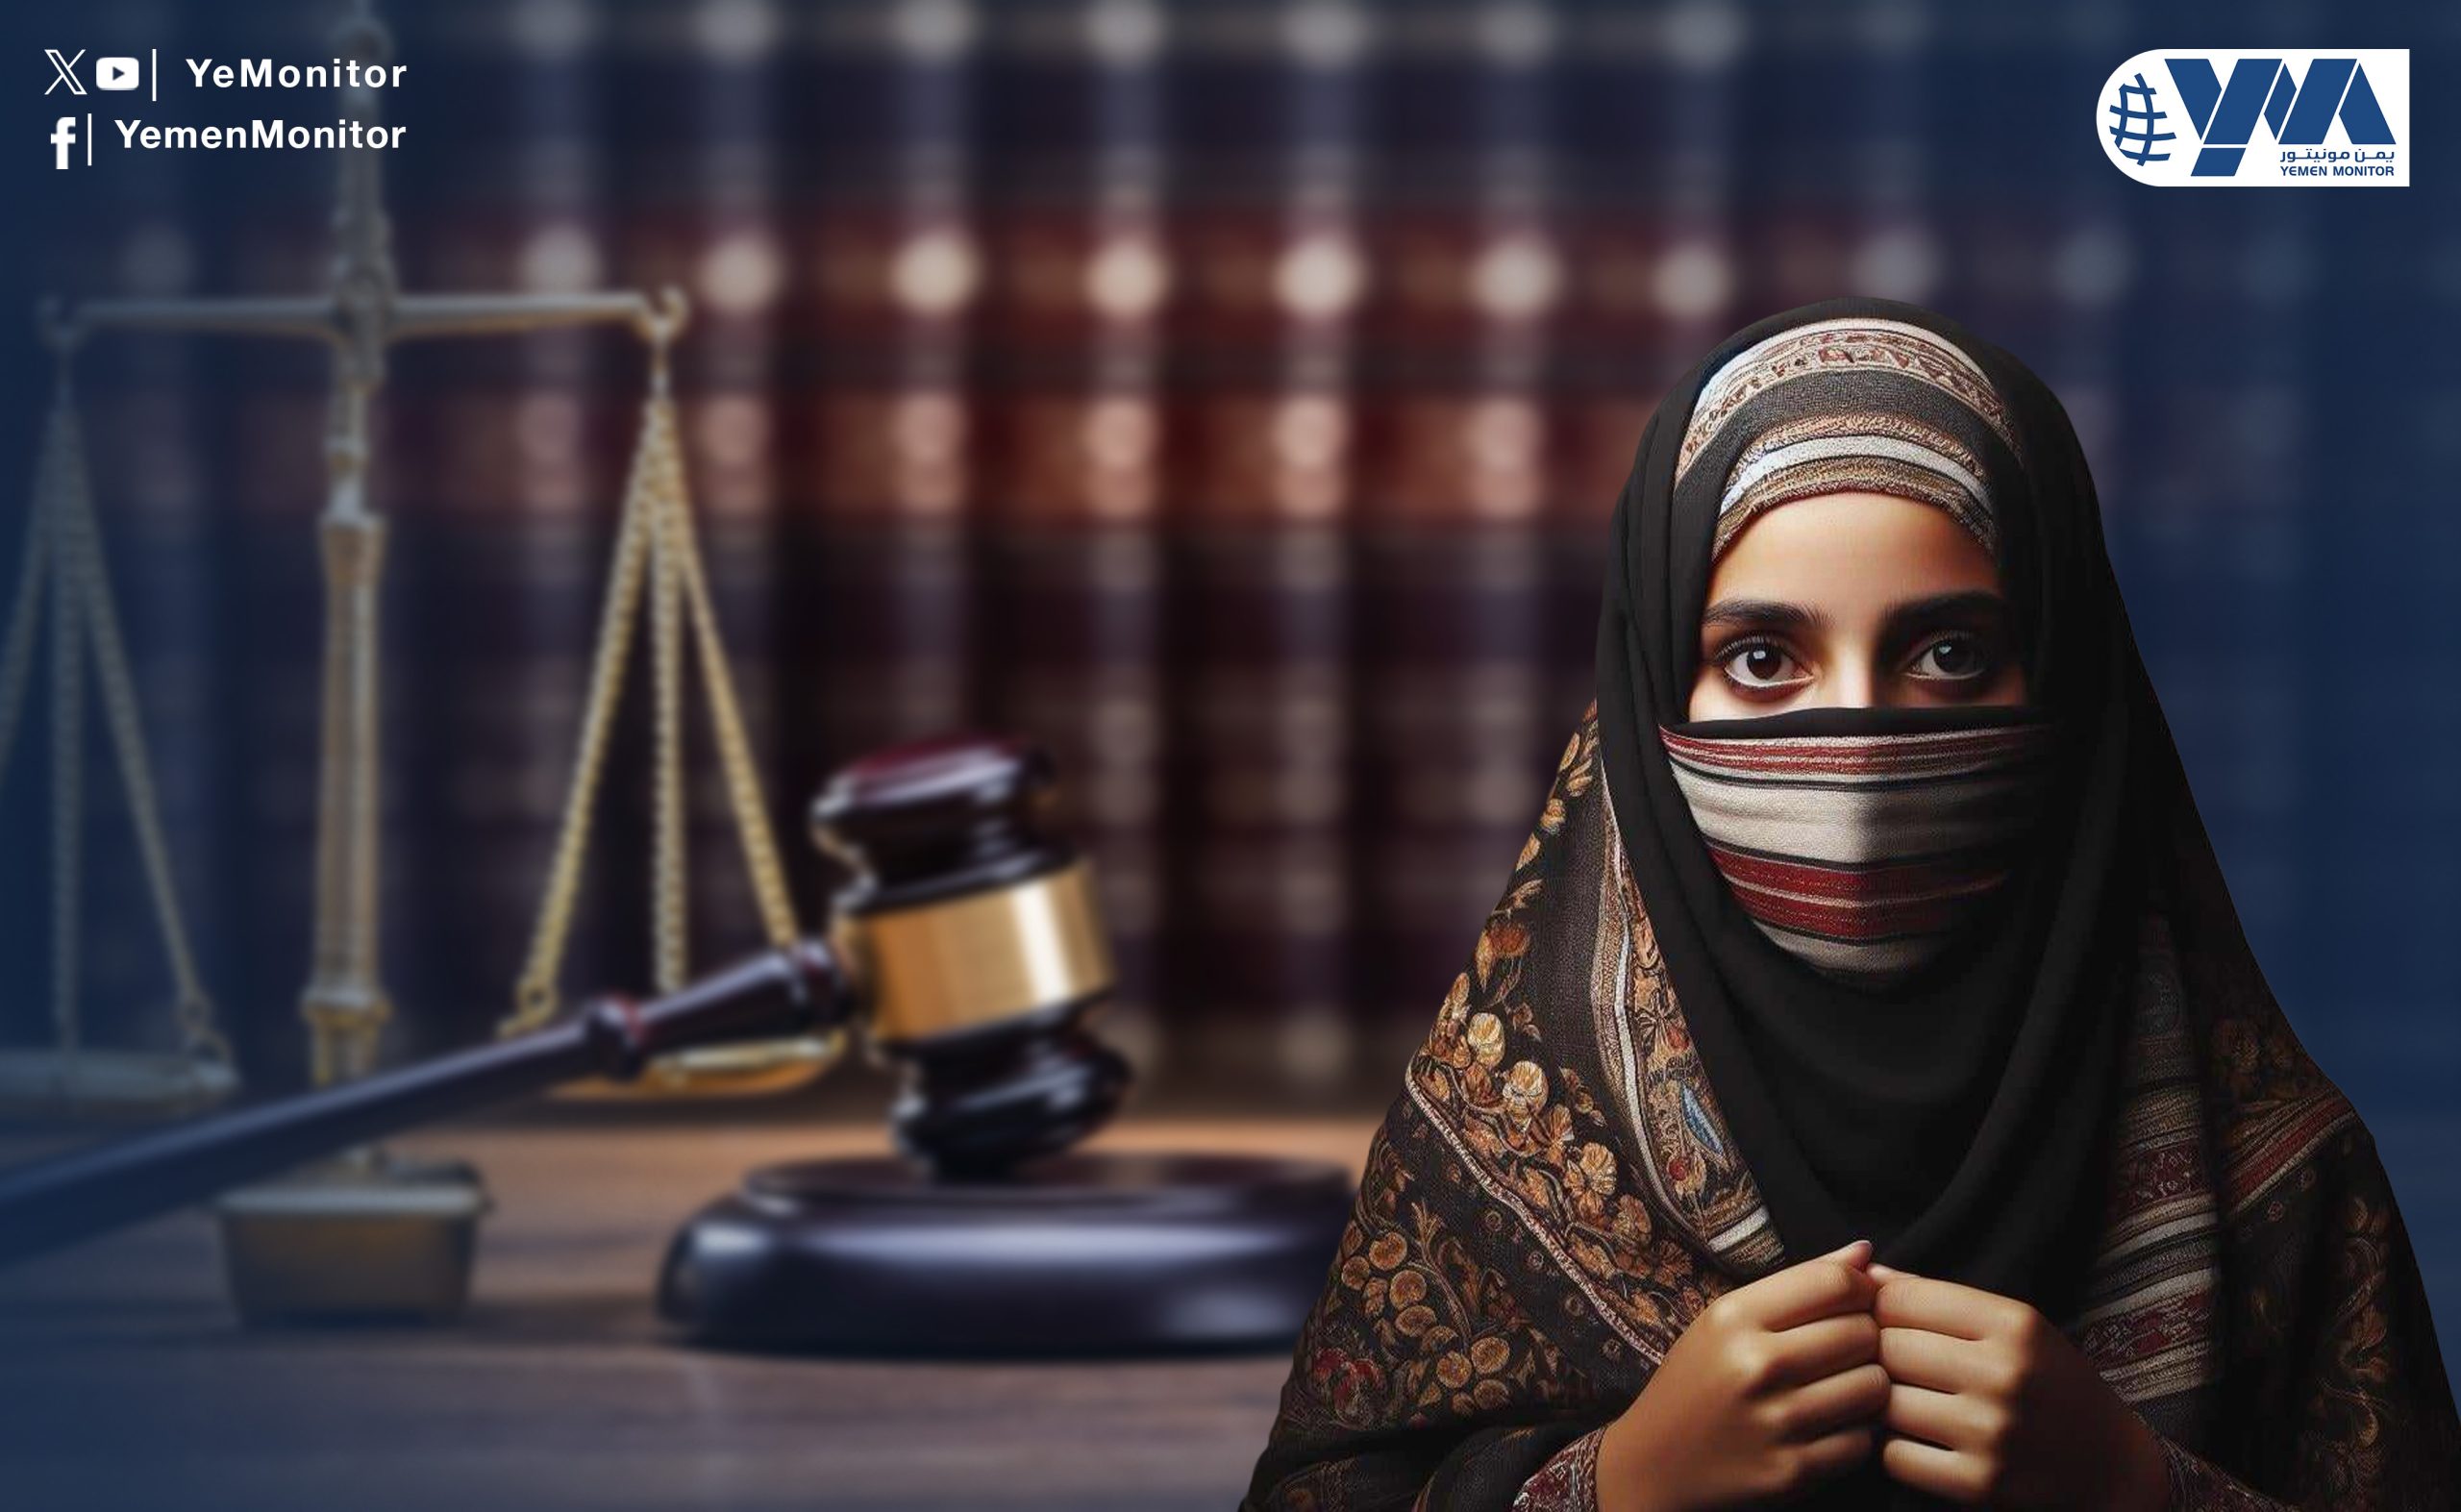 الدستور اليمني ينصف المرأة والقانون ومُشرعه ينتهك حقوقها (تقرير خاص)